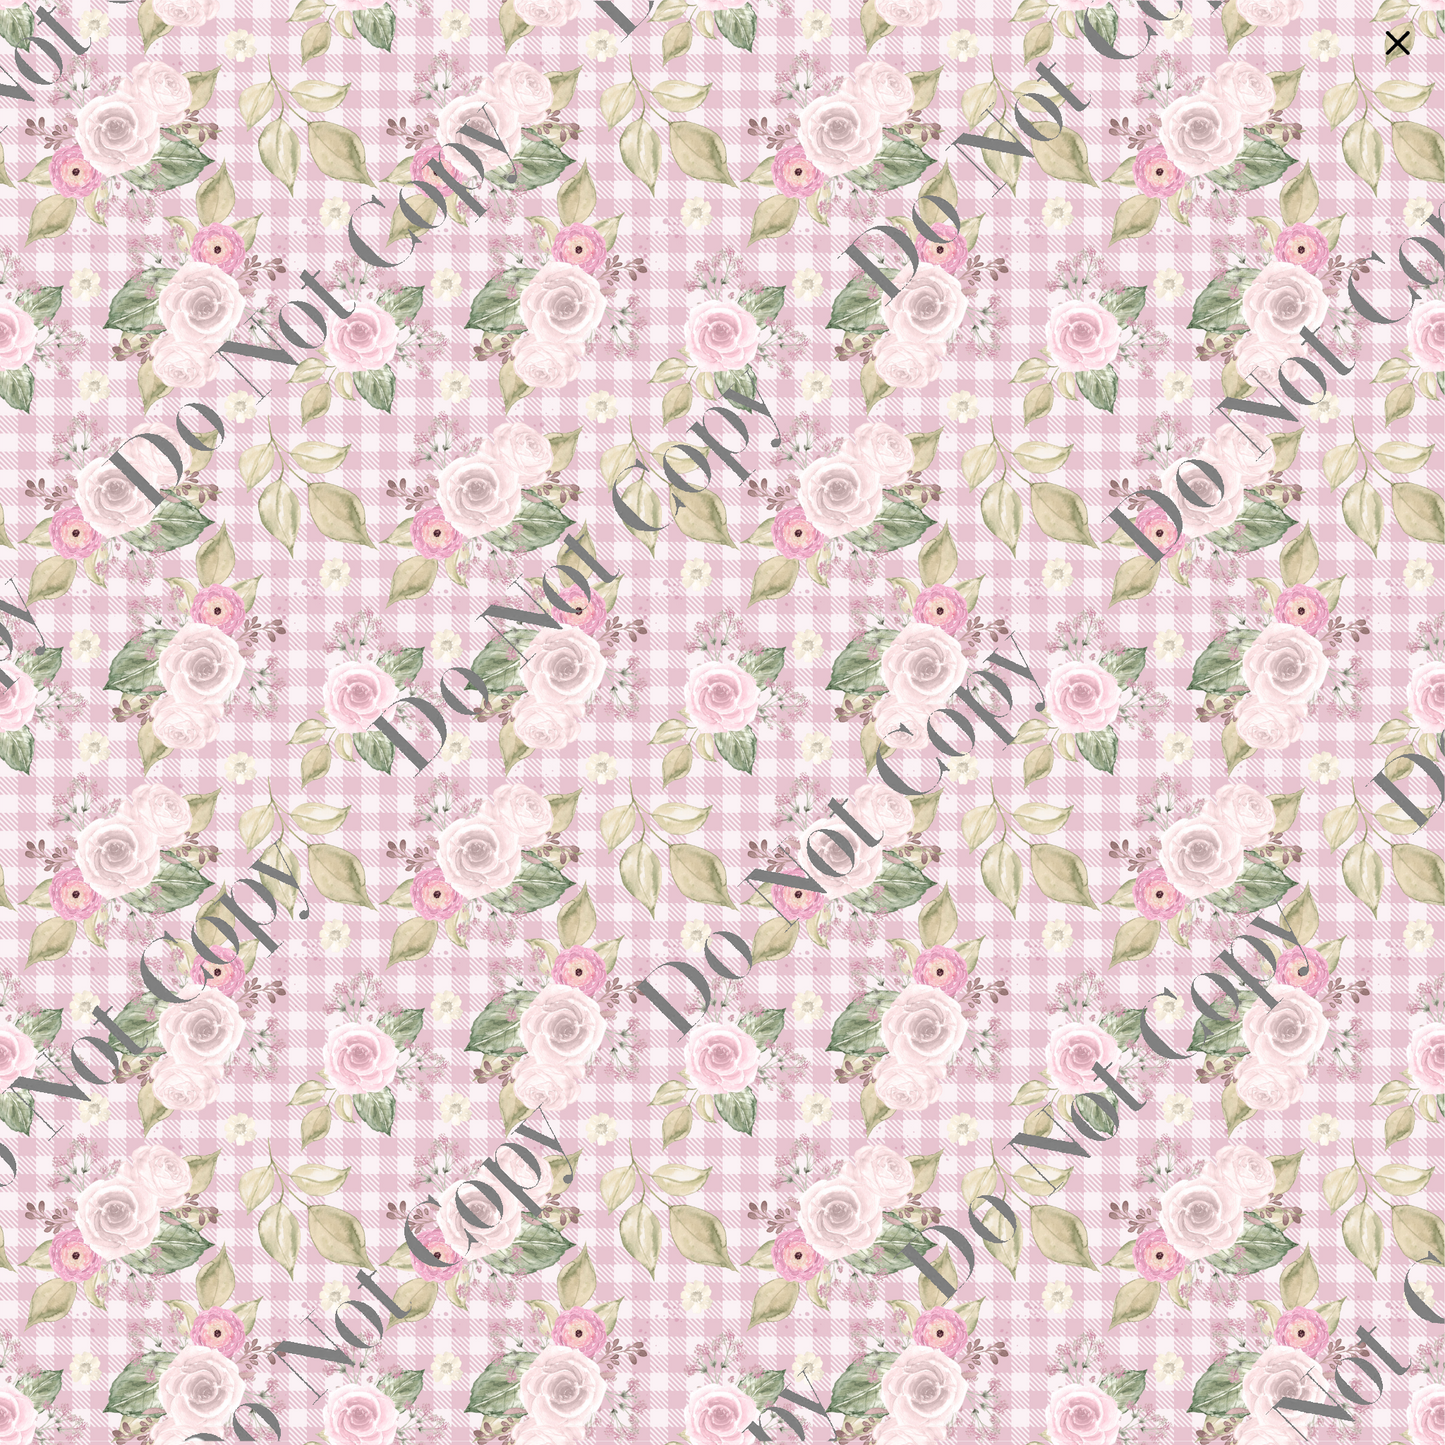 Patterned Vinyl - Floral Pink Plaid